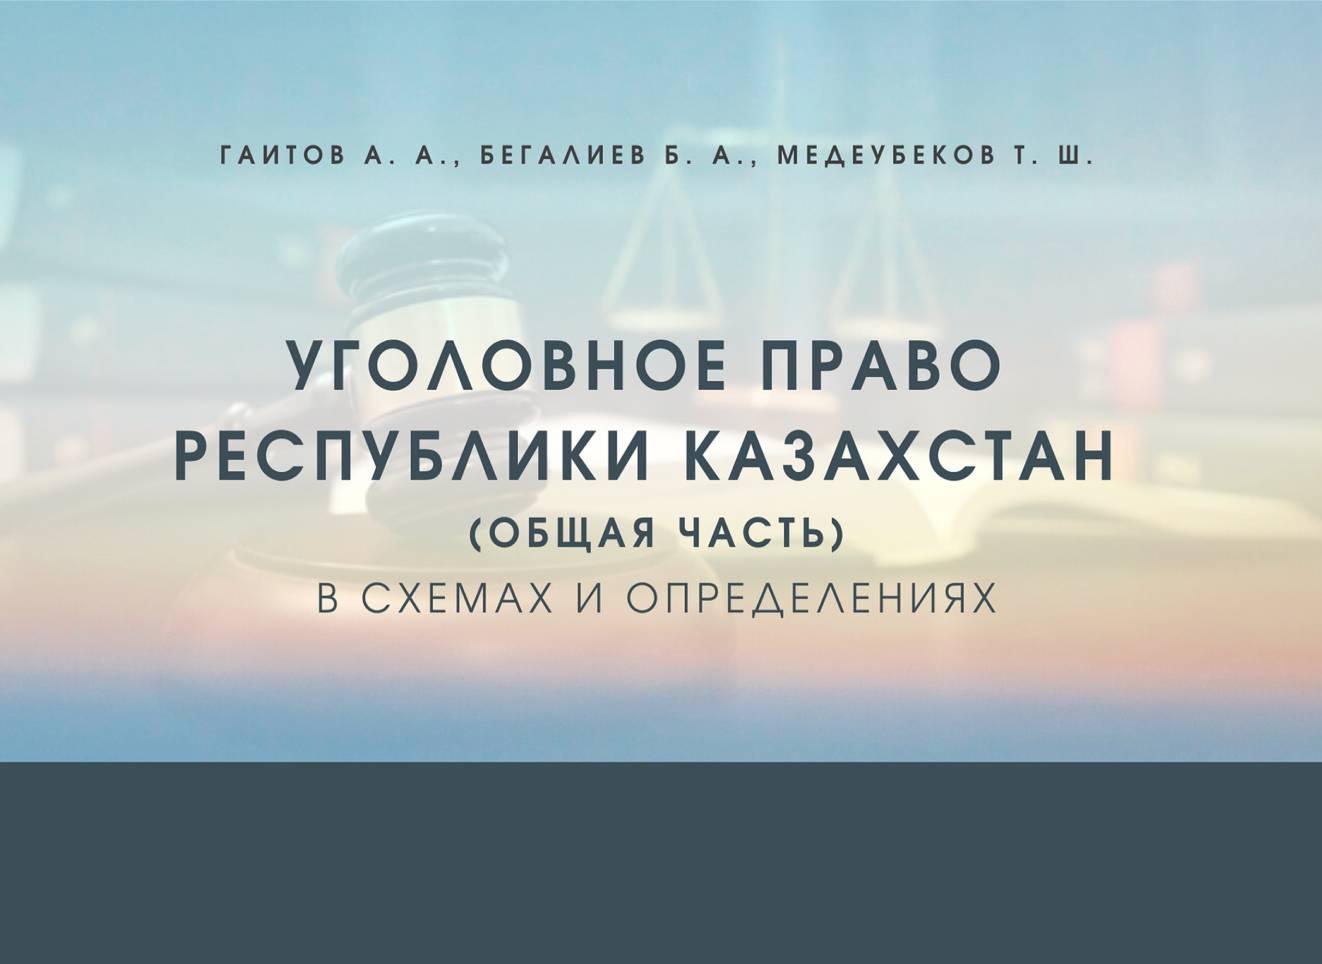 Уголовное право Республики Казахстан (общая часть) в схемах и определениях. учебное пособие.